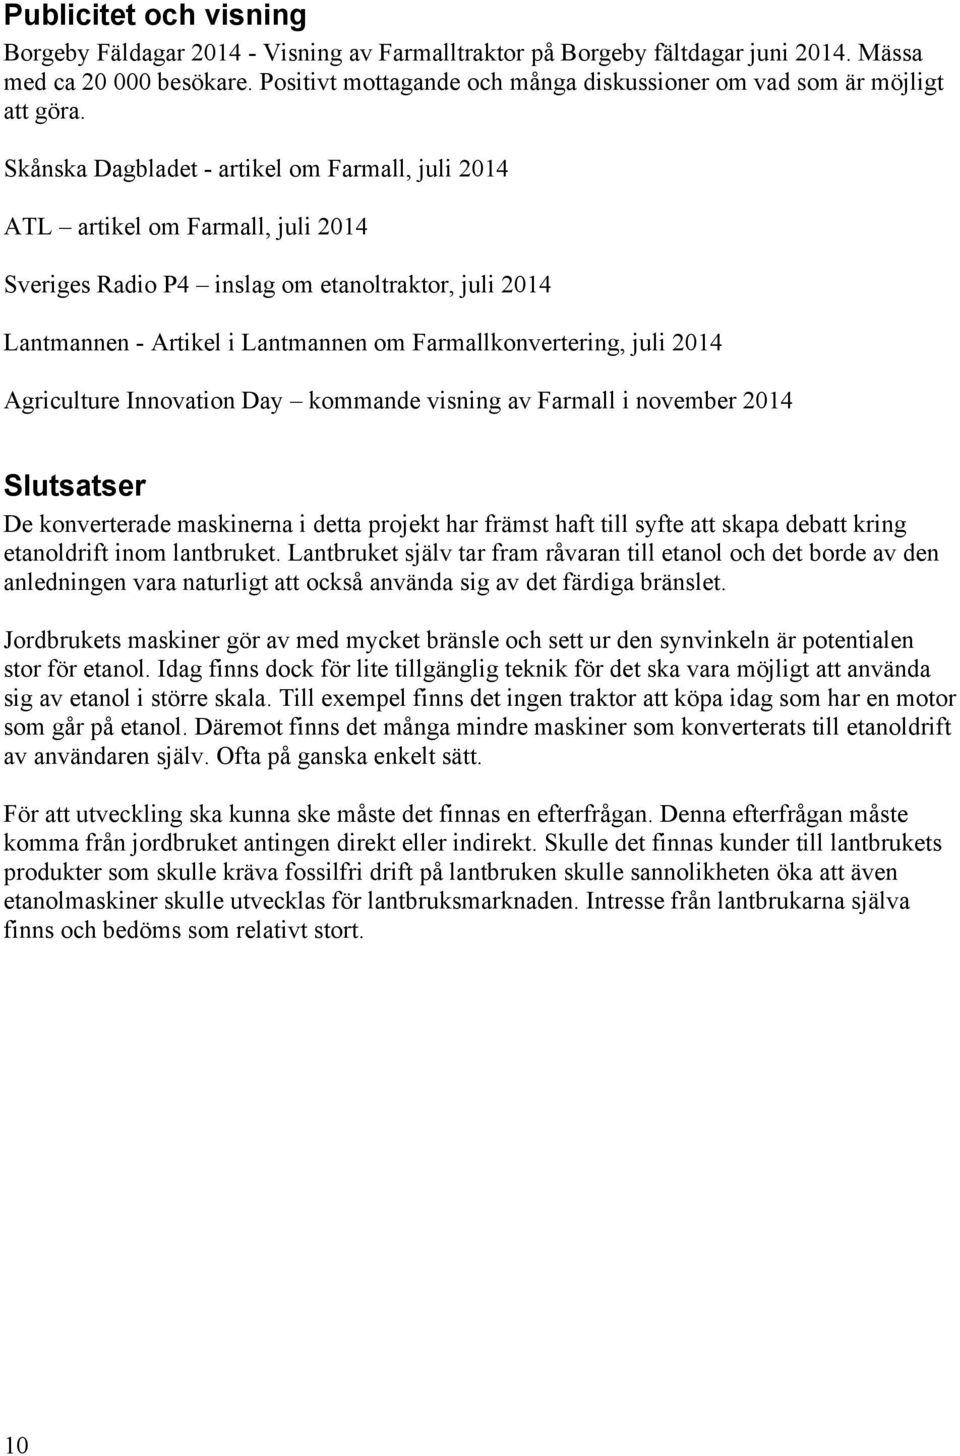 Skånska Dagbladet - artikel om Farmall, juli 2014 ATL artikel om Farmall, juli 2014 Sveriges Radio P4 inslag om etanoltraktor, juli 2014 Lantmannen - Artikel i Lantmannen om Farmallkonvertering, juli